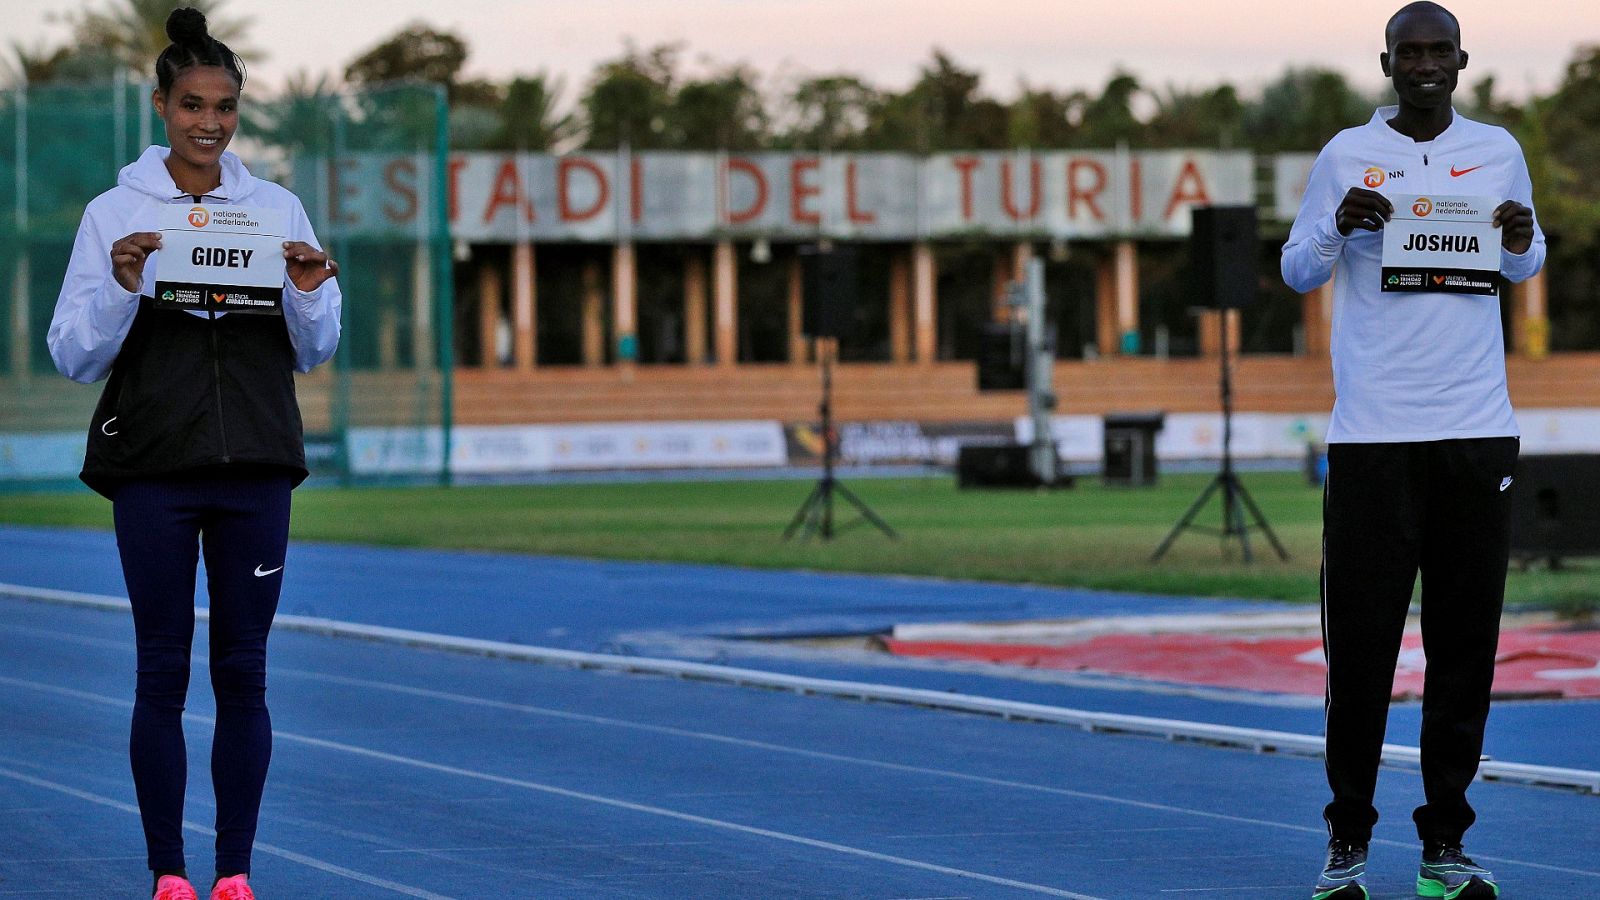 La atleta etíope Letensebet Gidey y el atleta ugandés Joshua Cheptegei, que este miércoles tratarán de batir los récord del mundo de los 5.000 y 10.000 metros lisos respectivamente, en el estadio Jardin del Túria de València, posan con sus dorsales.